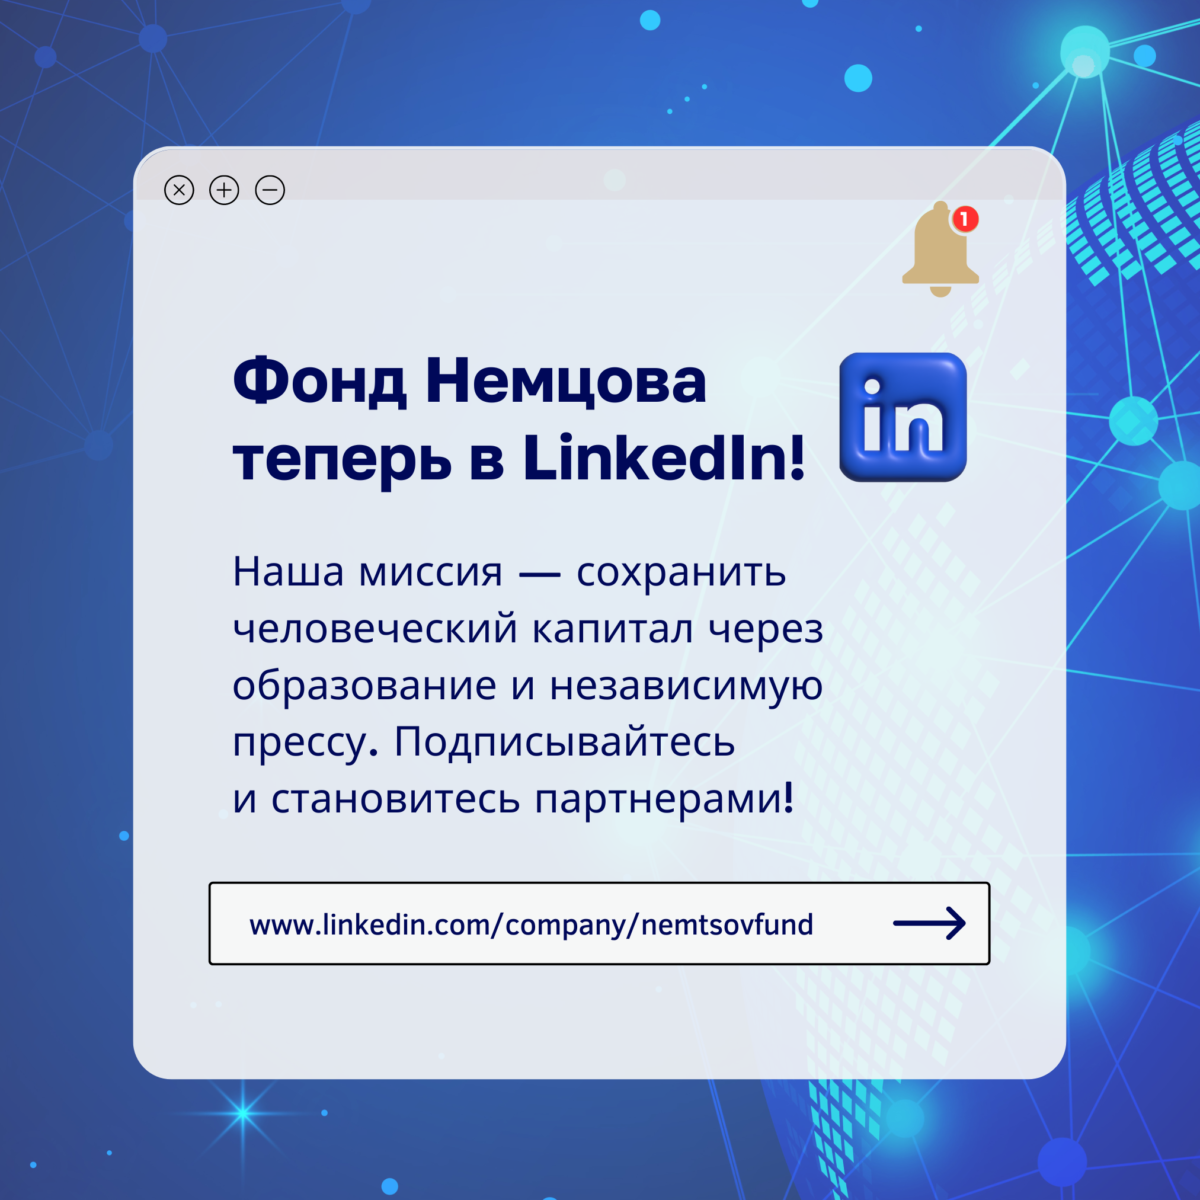 Фонд Немцова теперь есть в LinkedIn!